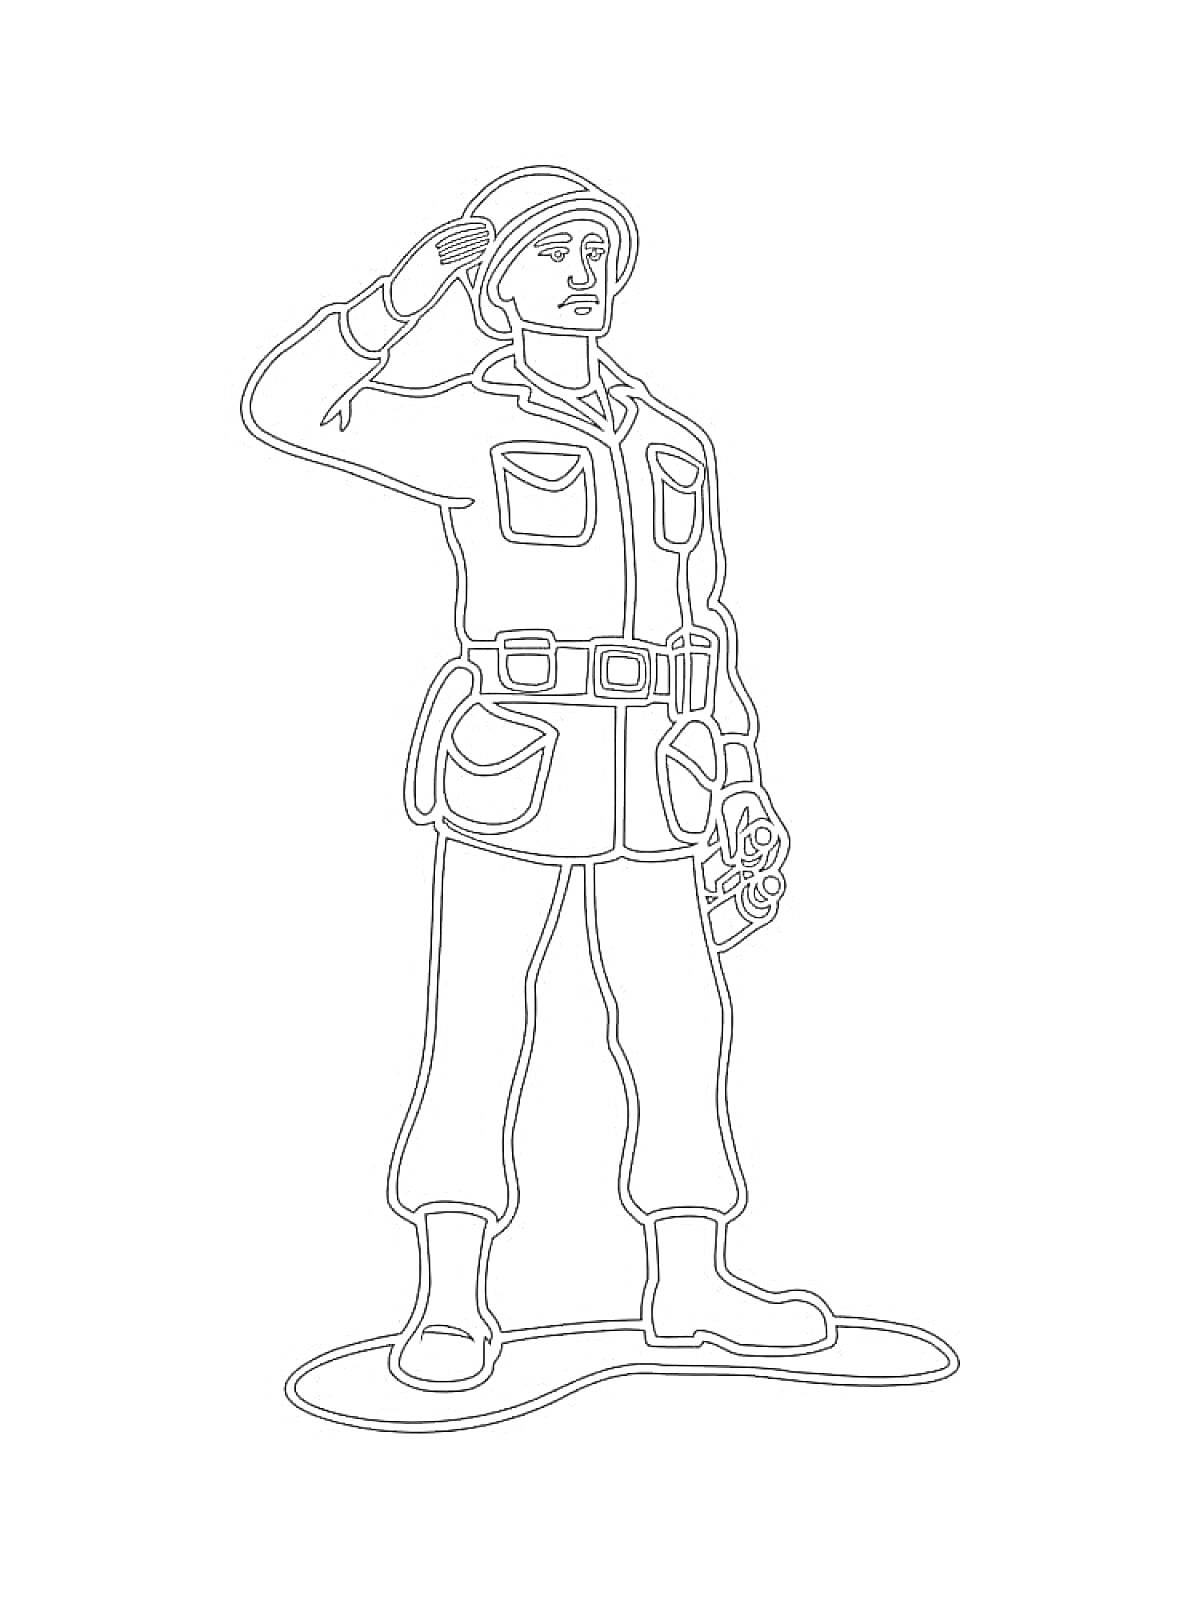 Солдат в форме с пистолетом и каской, отдающий честь